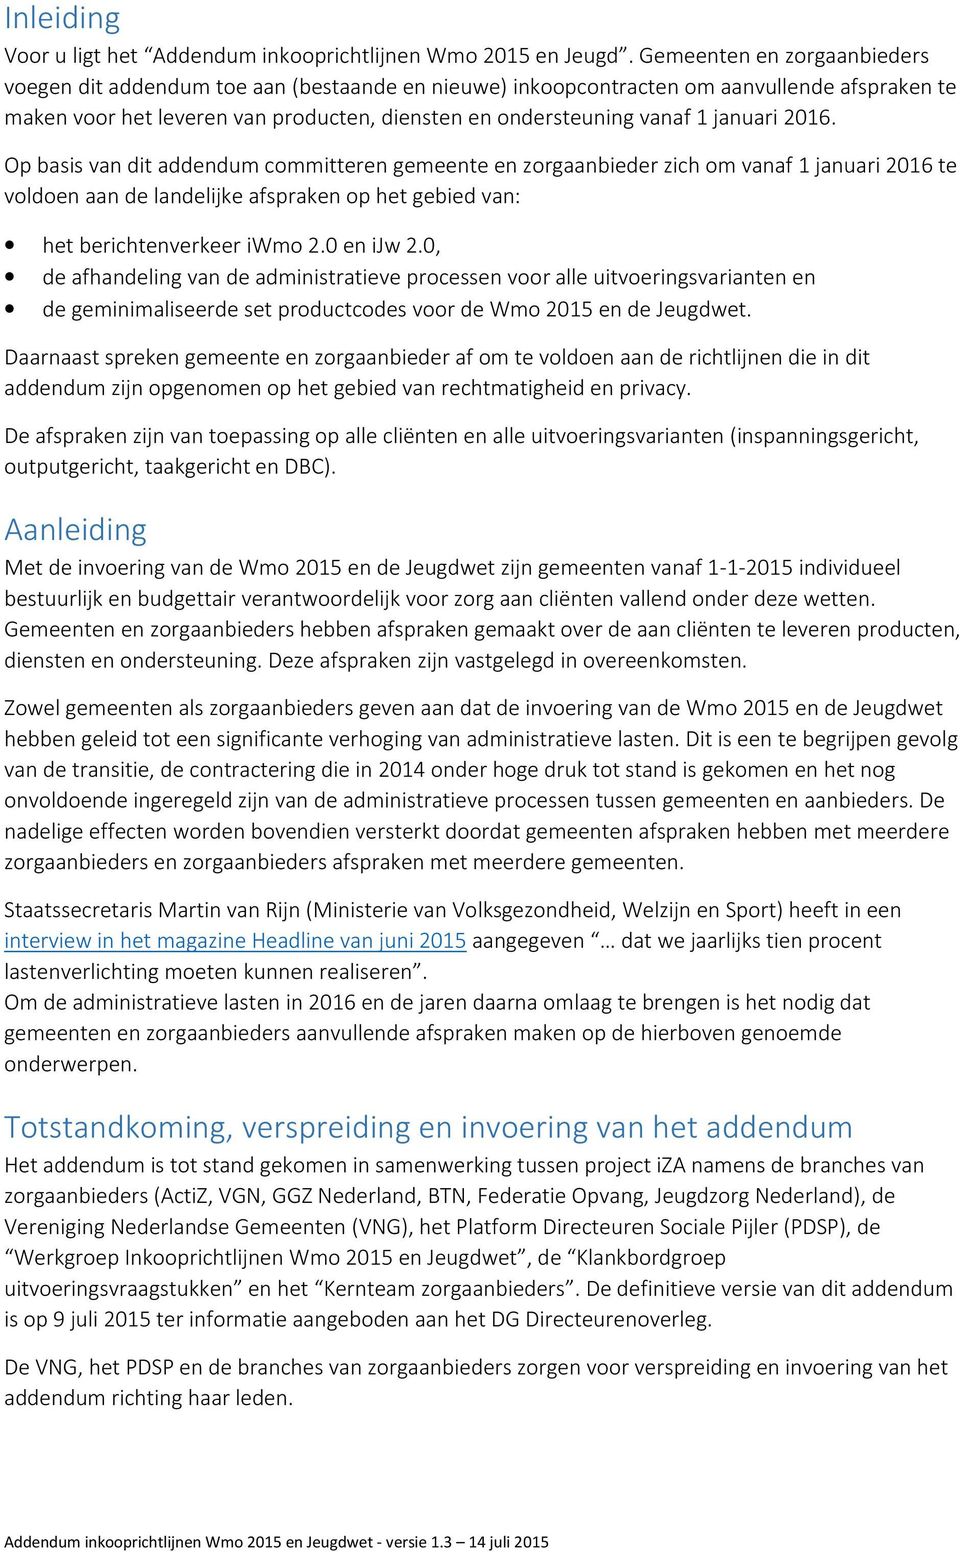 januari 2016. Op basis van dit addendum committeren gemeente en zorgaanbieder zich om vanaf 1 januari 2016 te voldoen aan de landelijke afspraken op het gebied van: het berichtenverkeer iwmo 2.